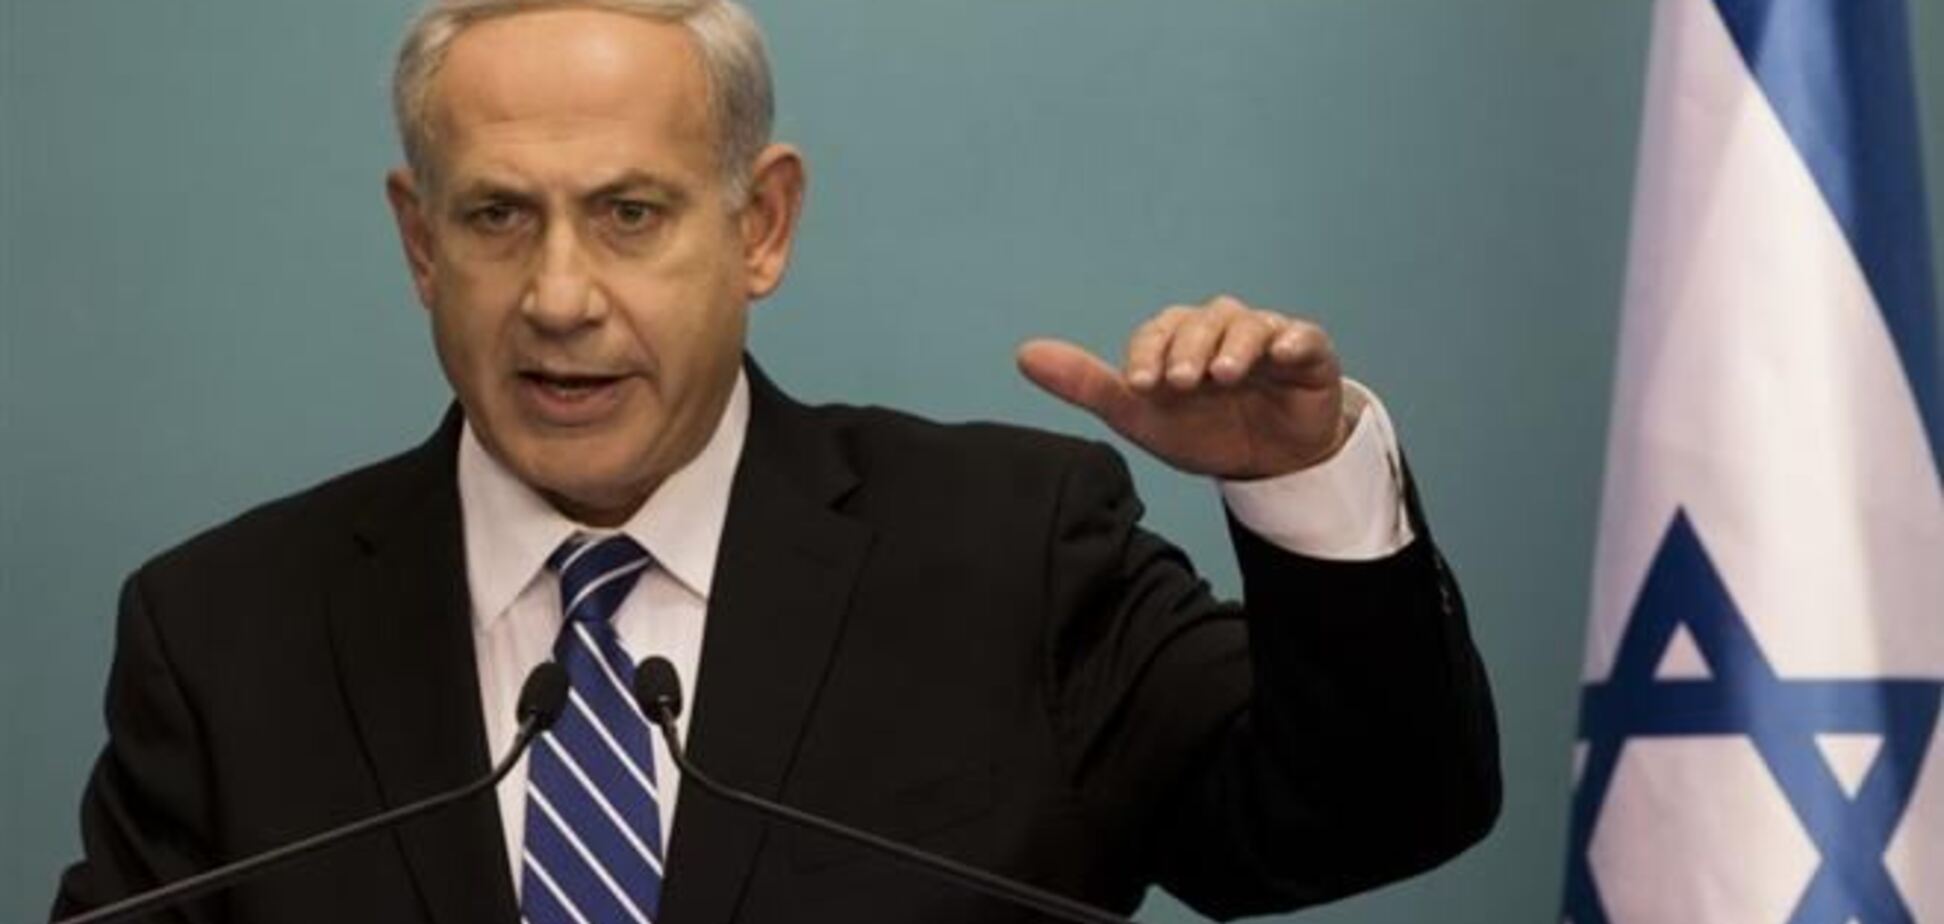 Нетаньяху отговаривает США от сотрудничества с Ираном